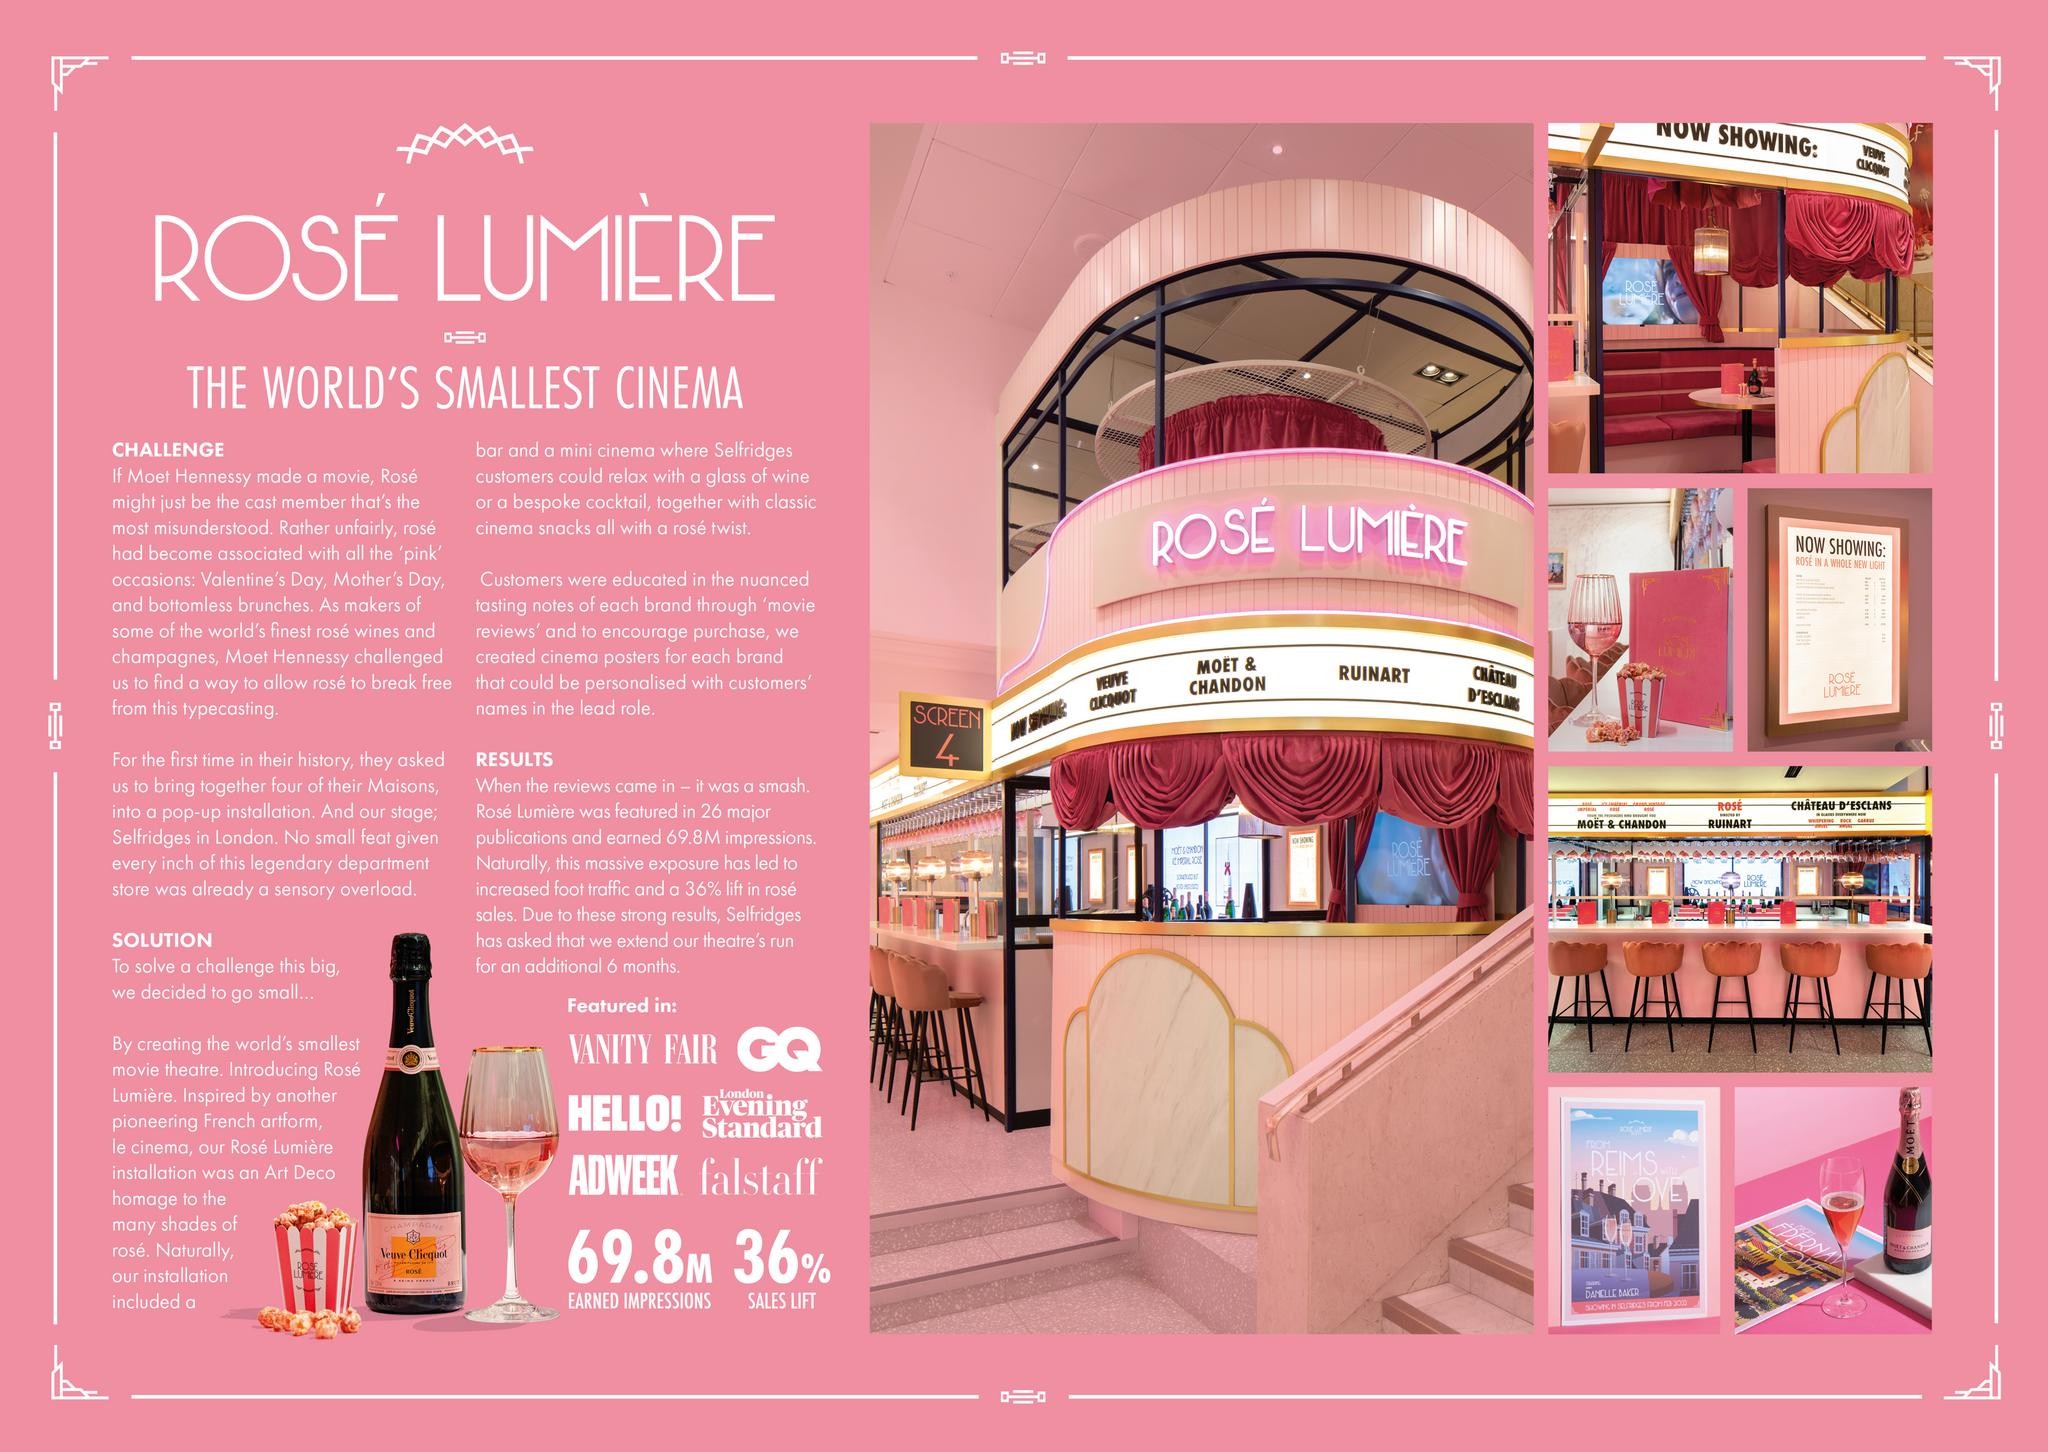 ROSÉ LUMIÈRE - THE WORLD'S SMALLEST CINEMA